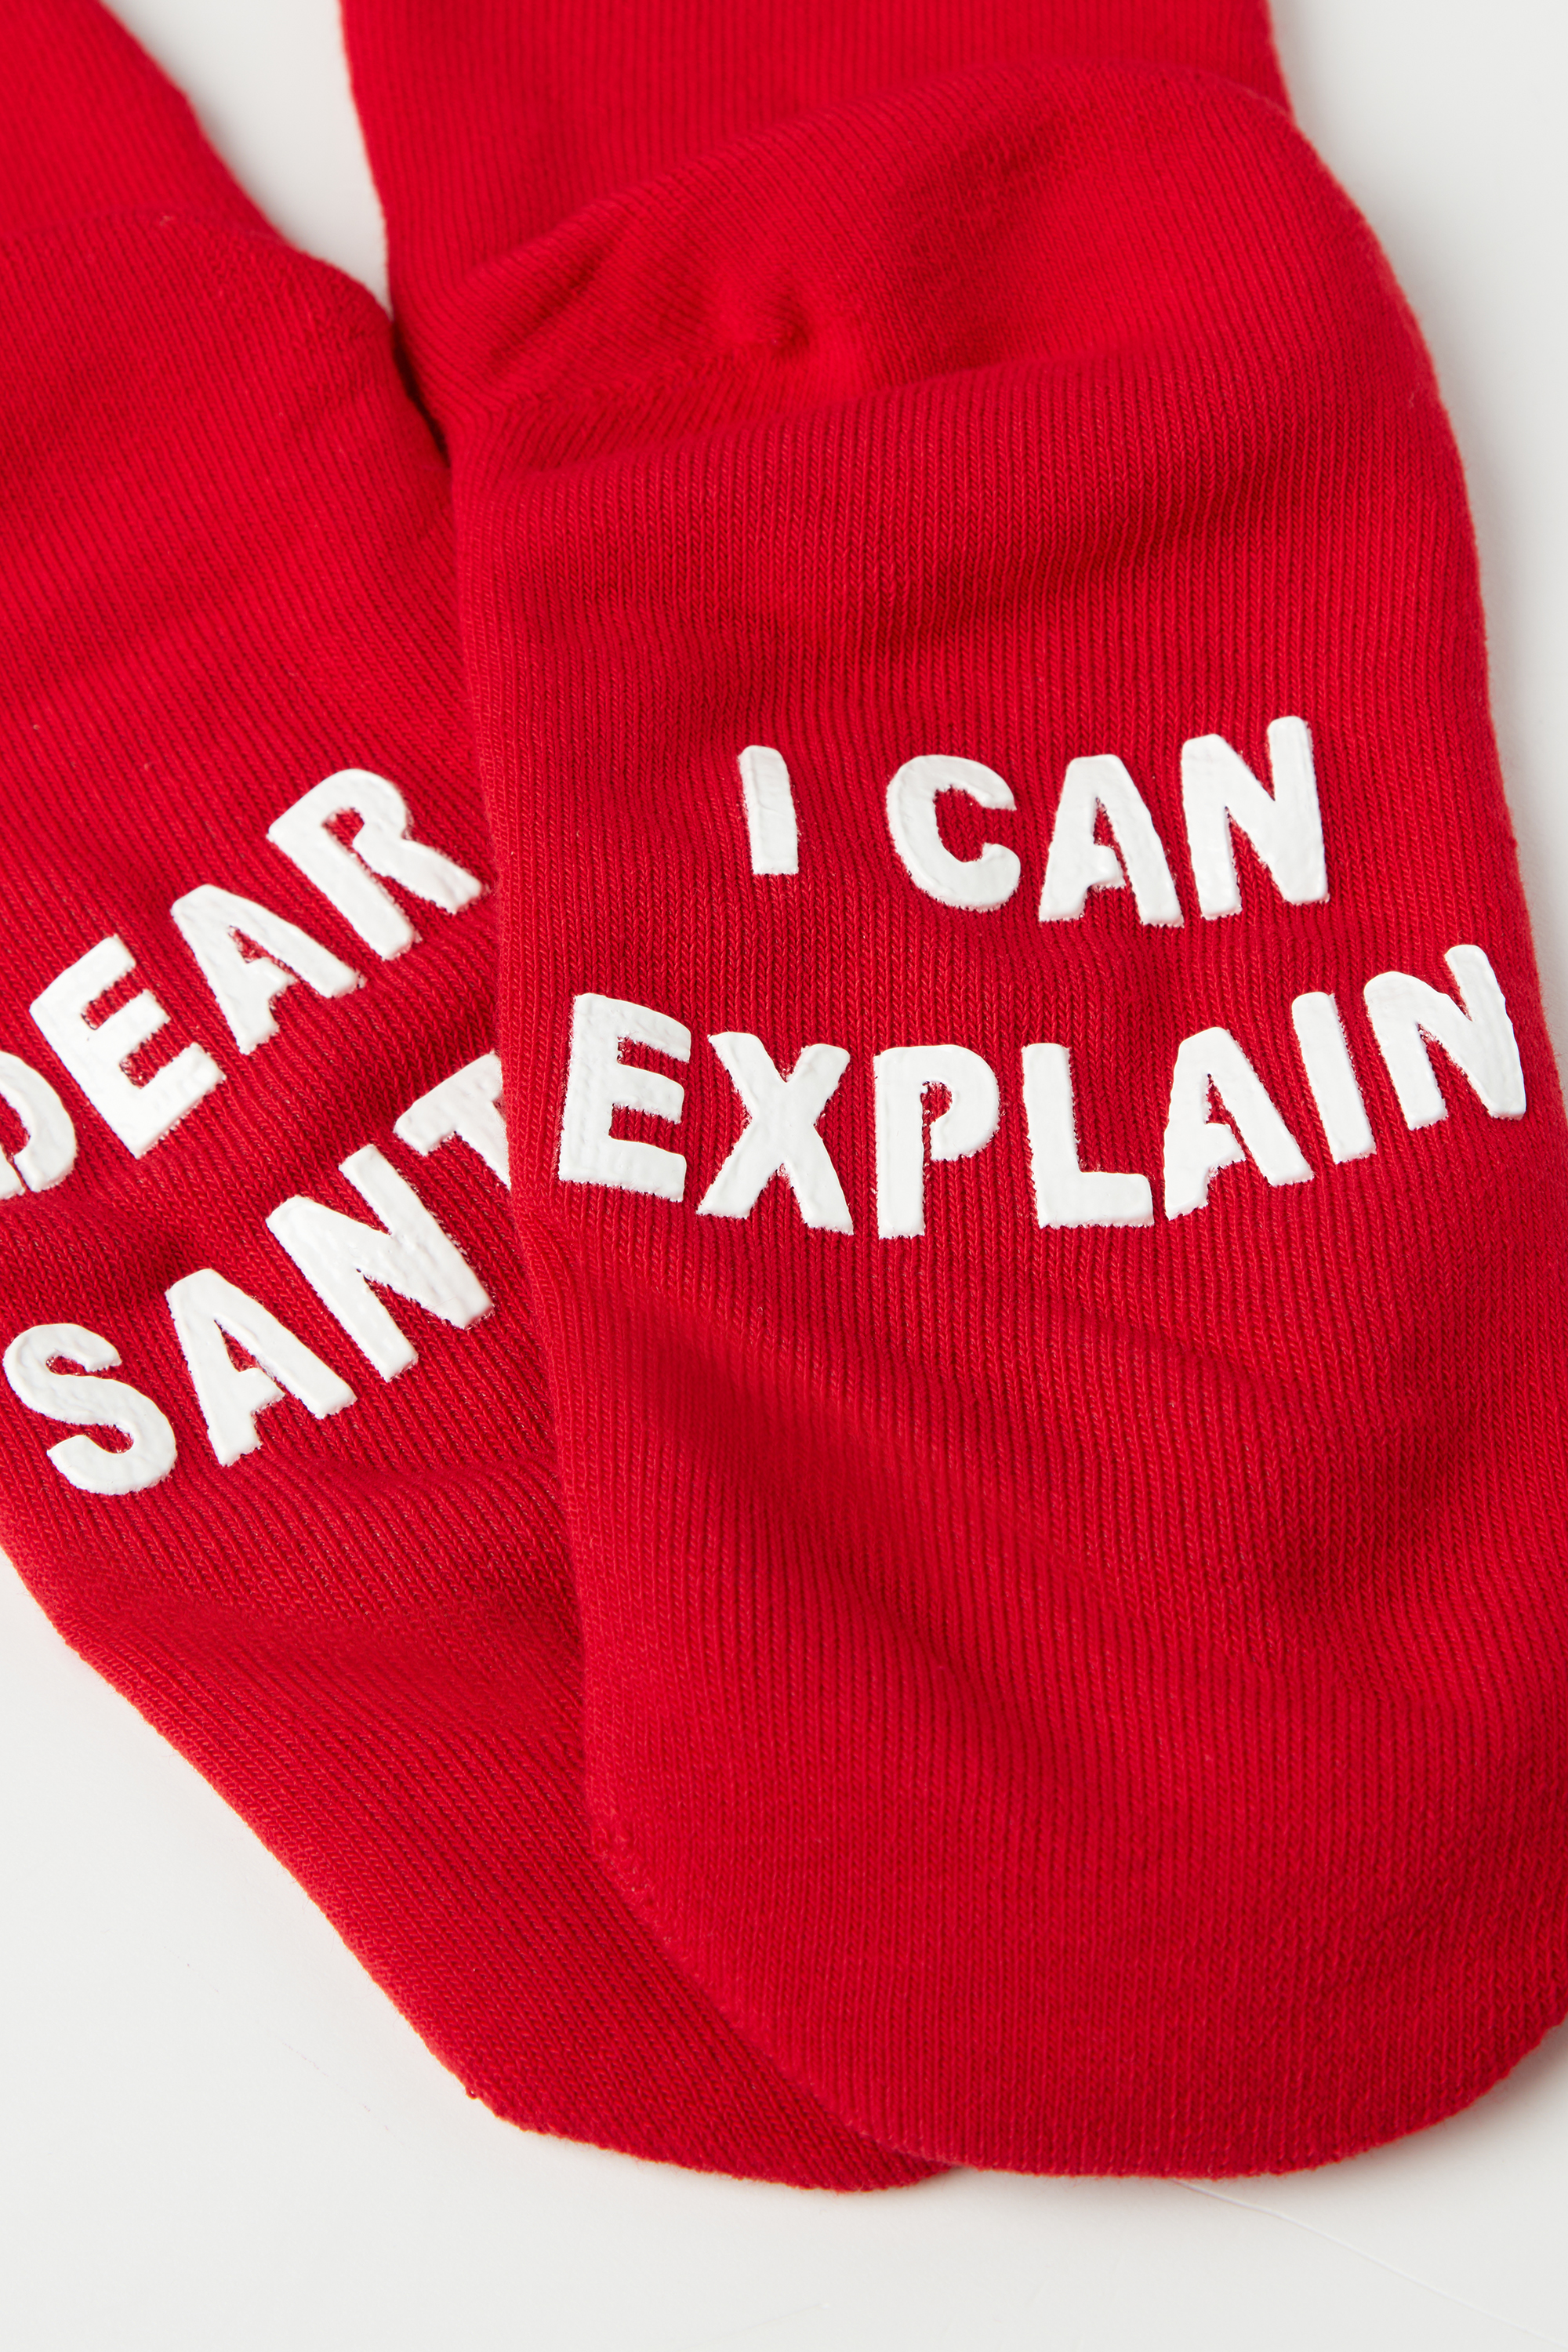 Αντρικές Κοντές Αντιολισθητικές Κάλτσες με Christmas Print «Dear Santa»